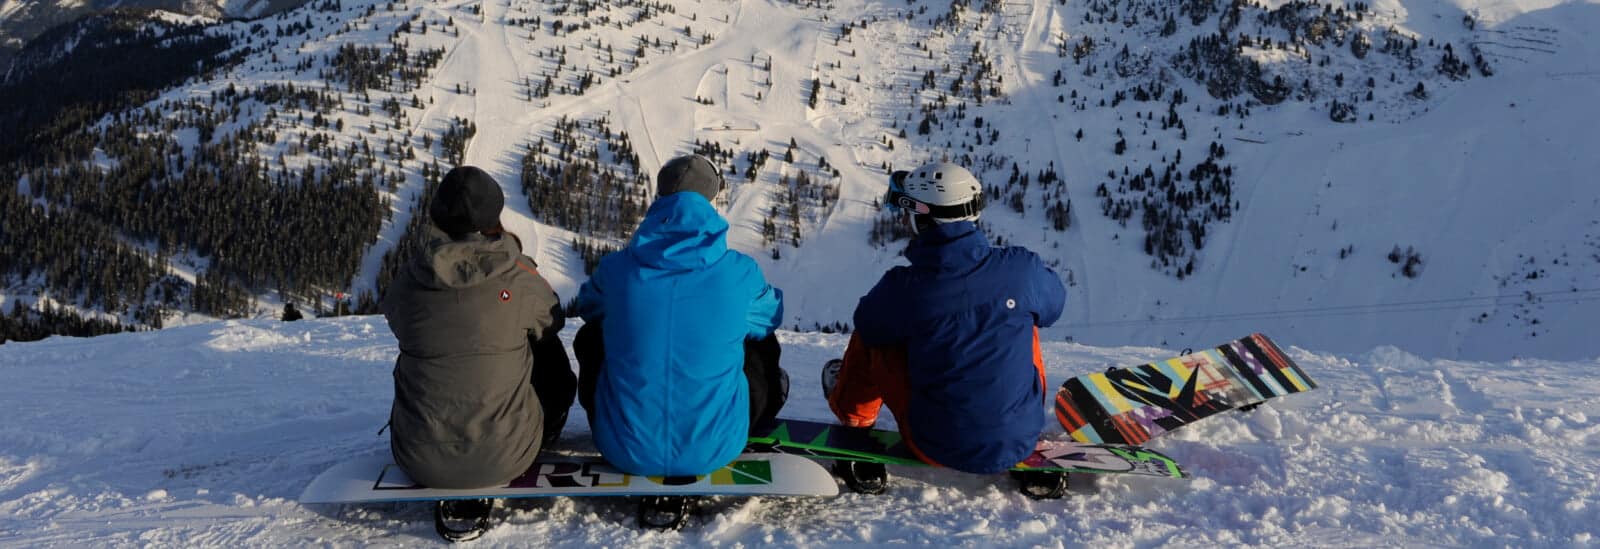 skiområder for snowboardere